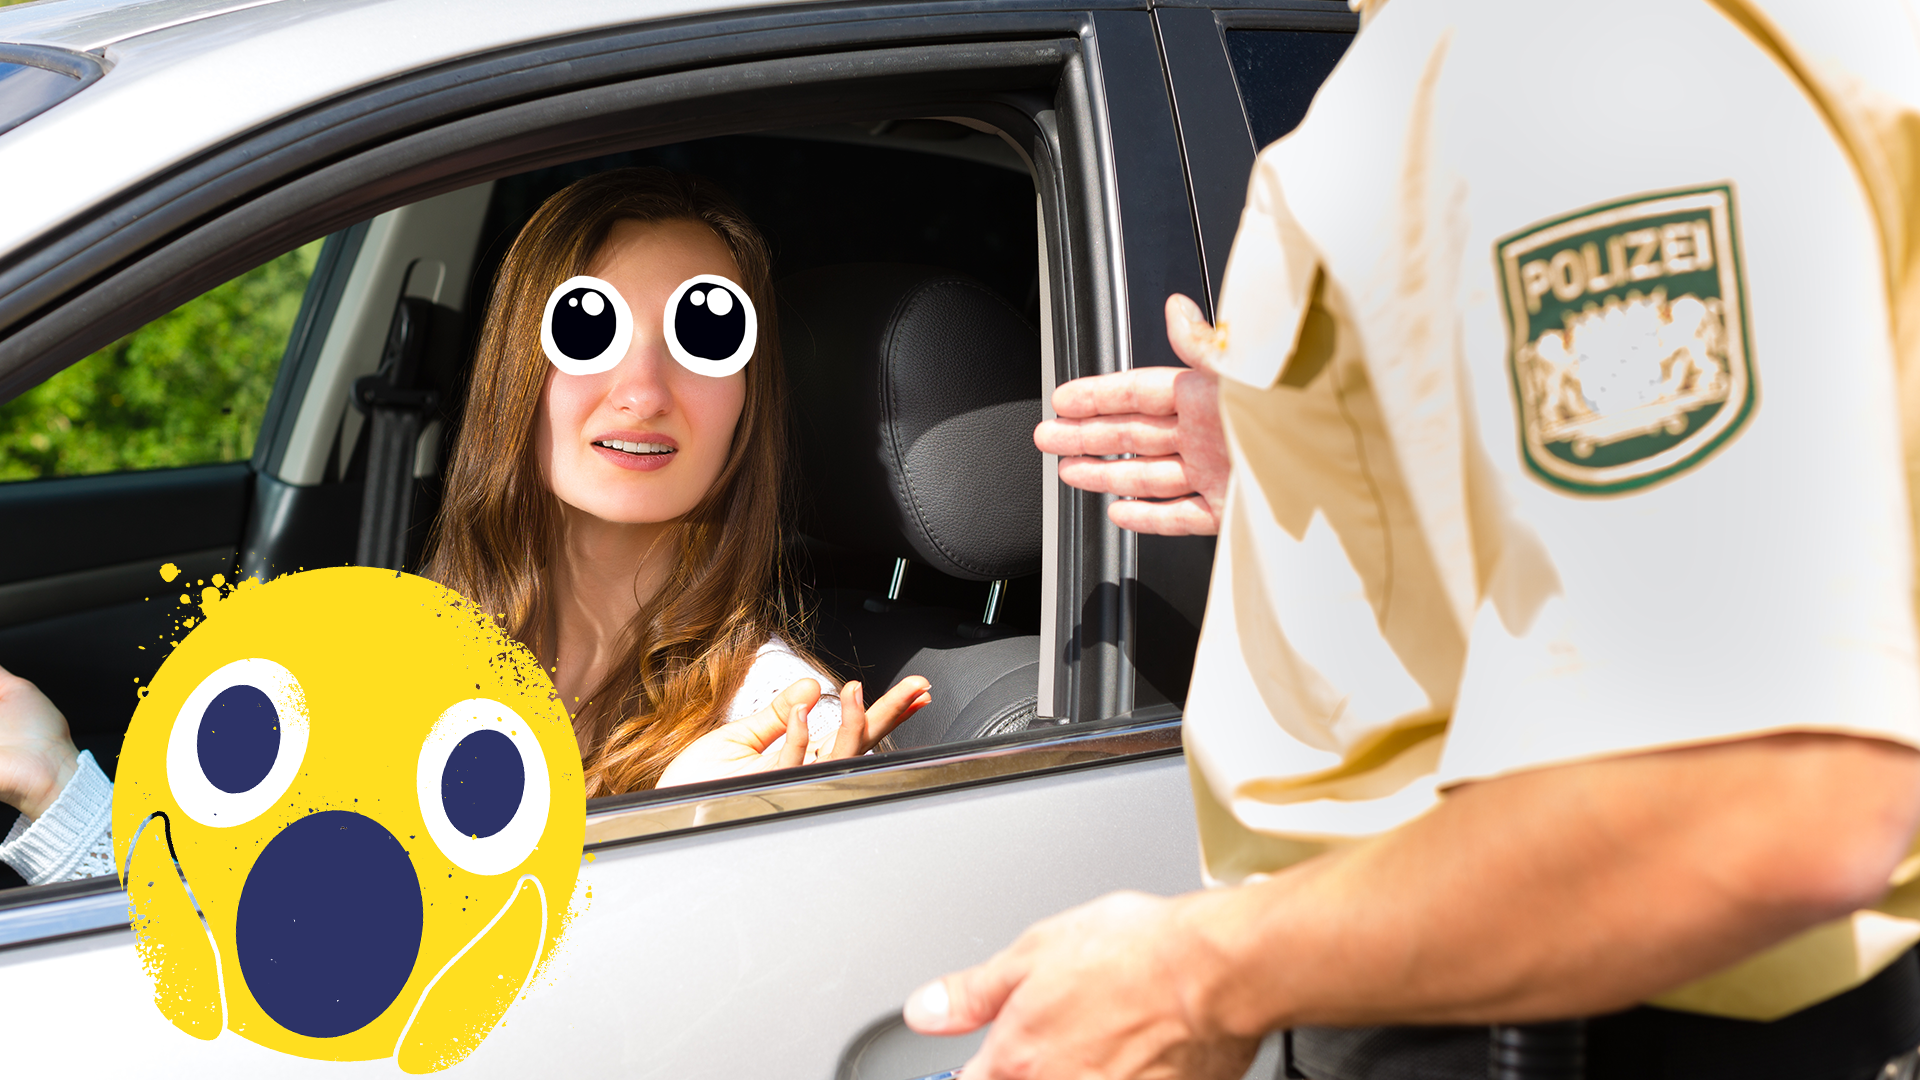 Woman getting speeding ticket, gasping emoji